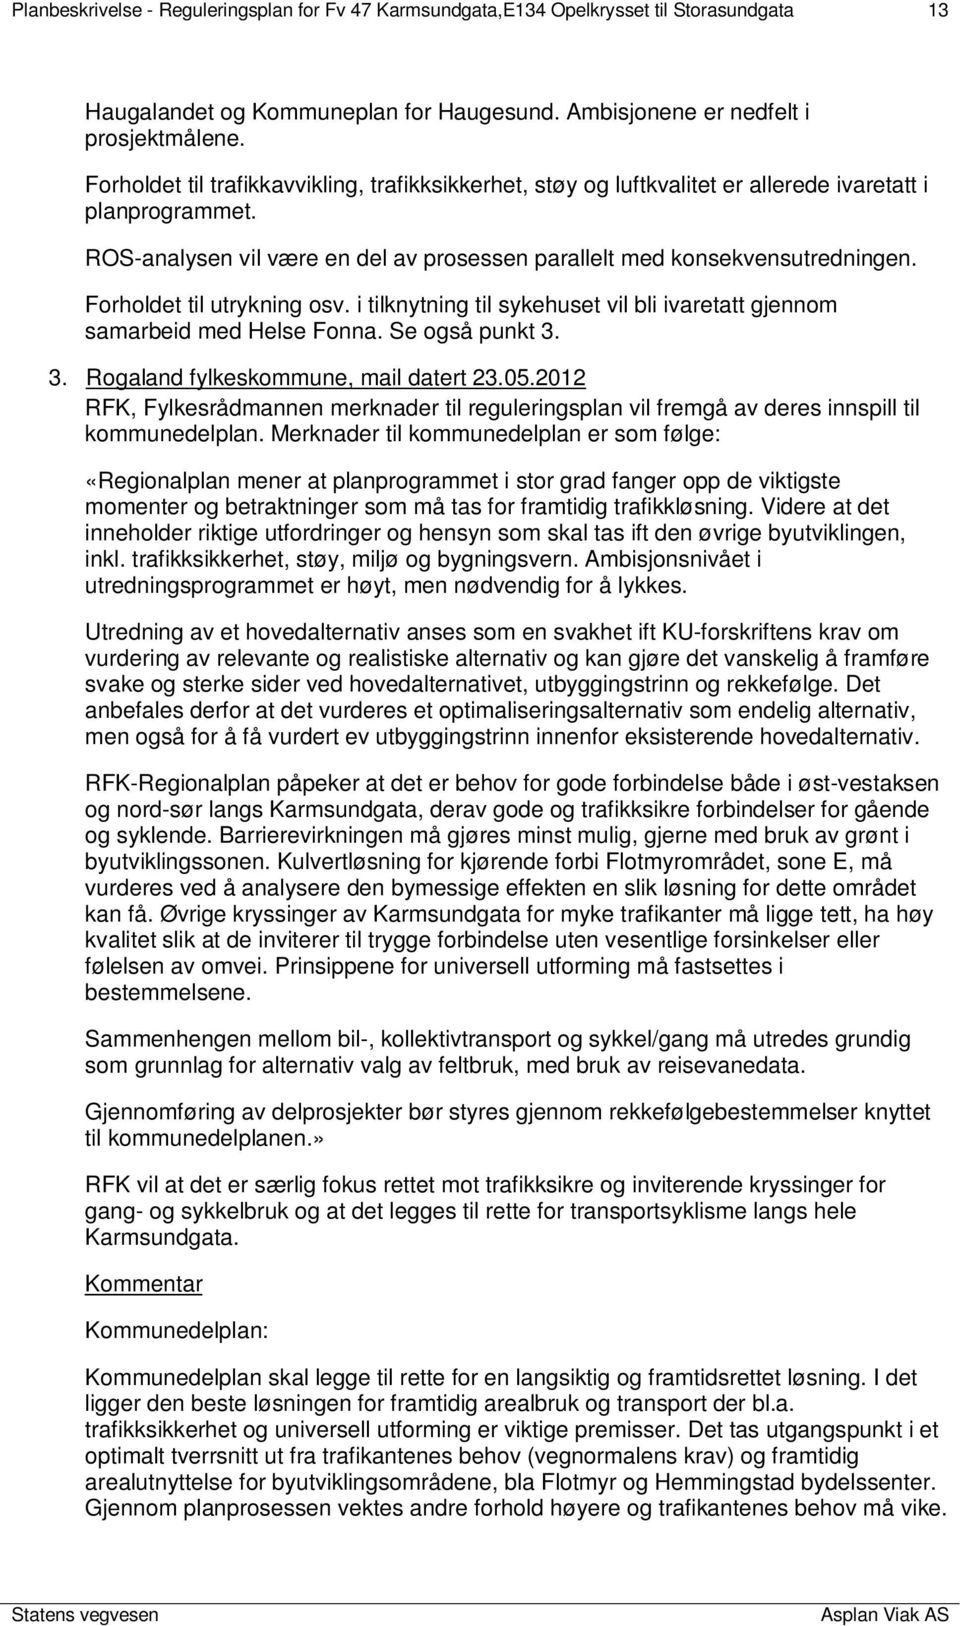 Forholdet til utrykning osv. i tilknytning til sykehuset vil bli ivaretatt gjennom samarbeid med Helse Fonna. Se også punkt 3. 3. Rogaland fylkeskommune, mail datert 23.05.